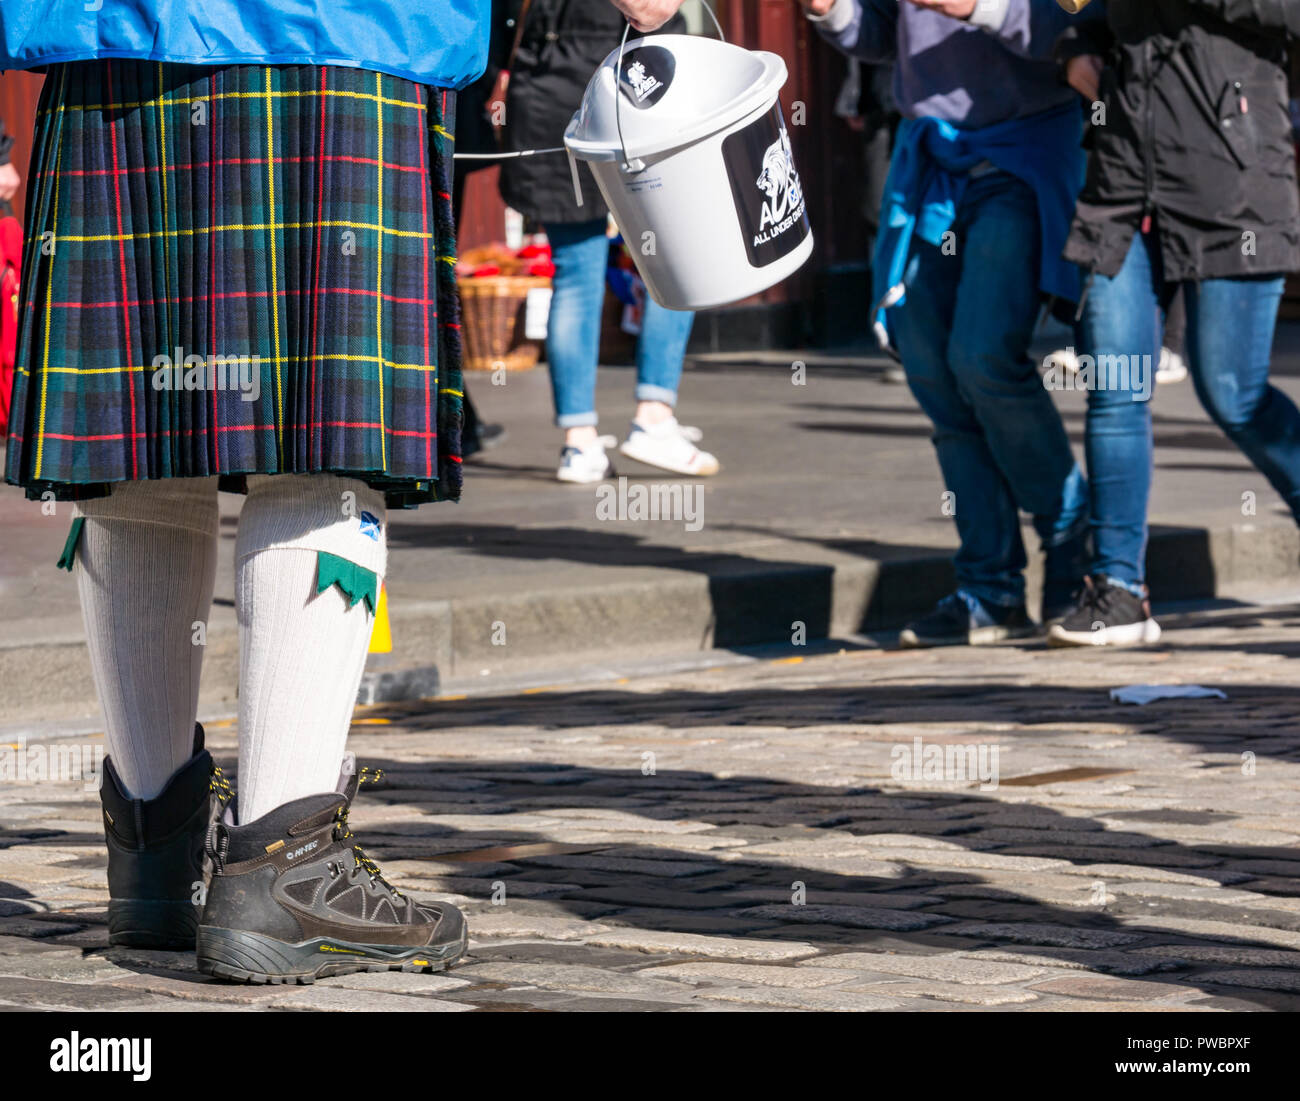 L'homme en kilt la collecte de dons pour tous sous une même bannière AUOB mars 2018 l'indépendance de l'Ecosse, Royal Mile, Édimbourg, Écosse, Royaume-Uni Banque D'Images